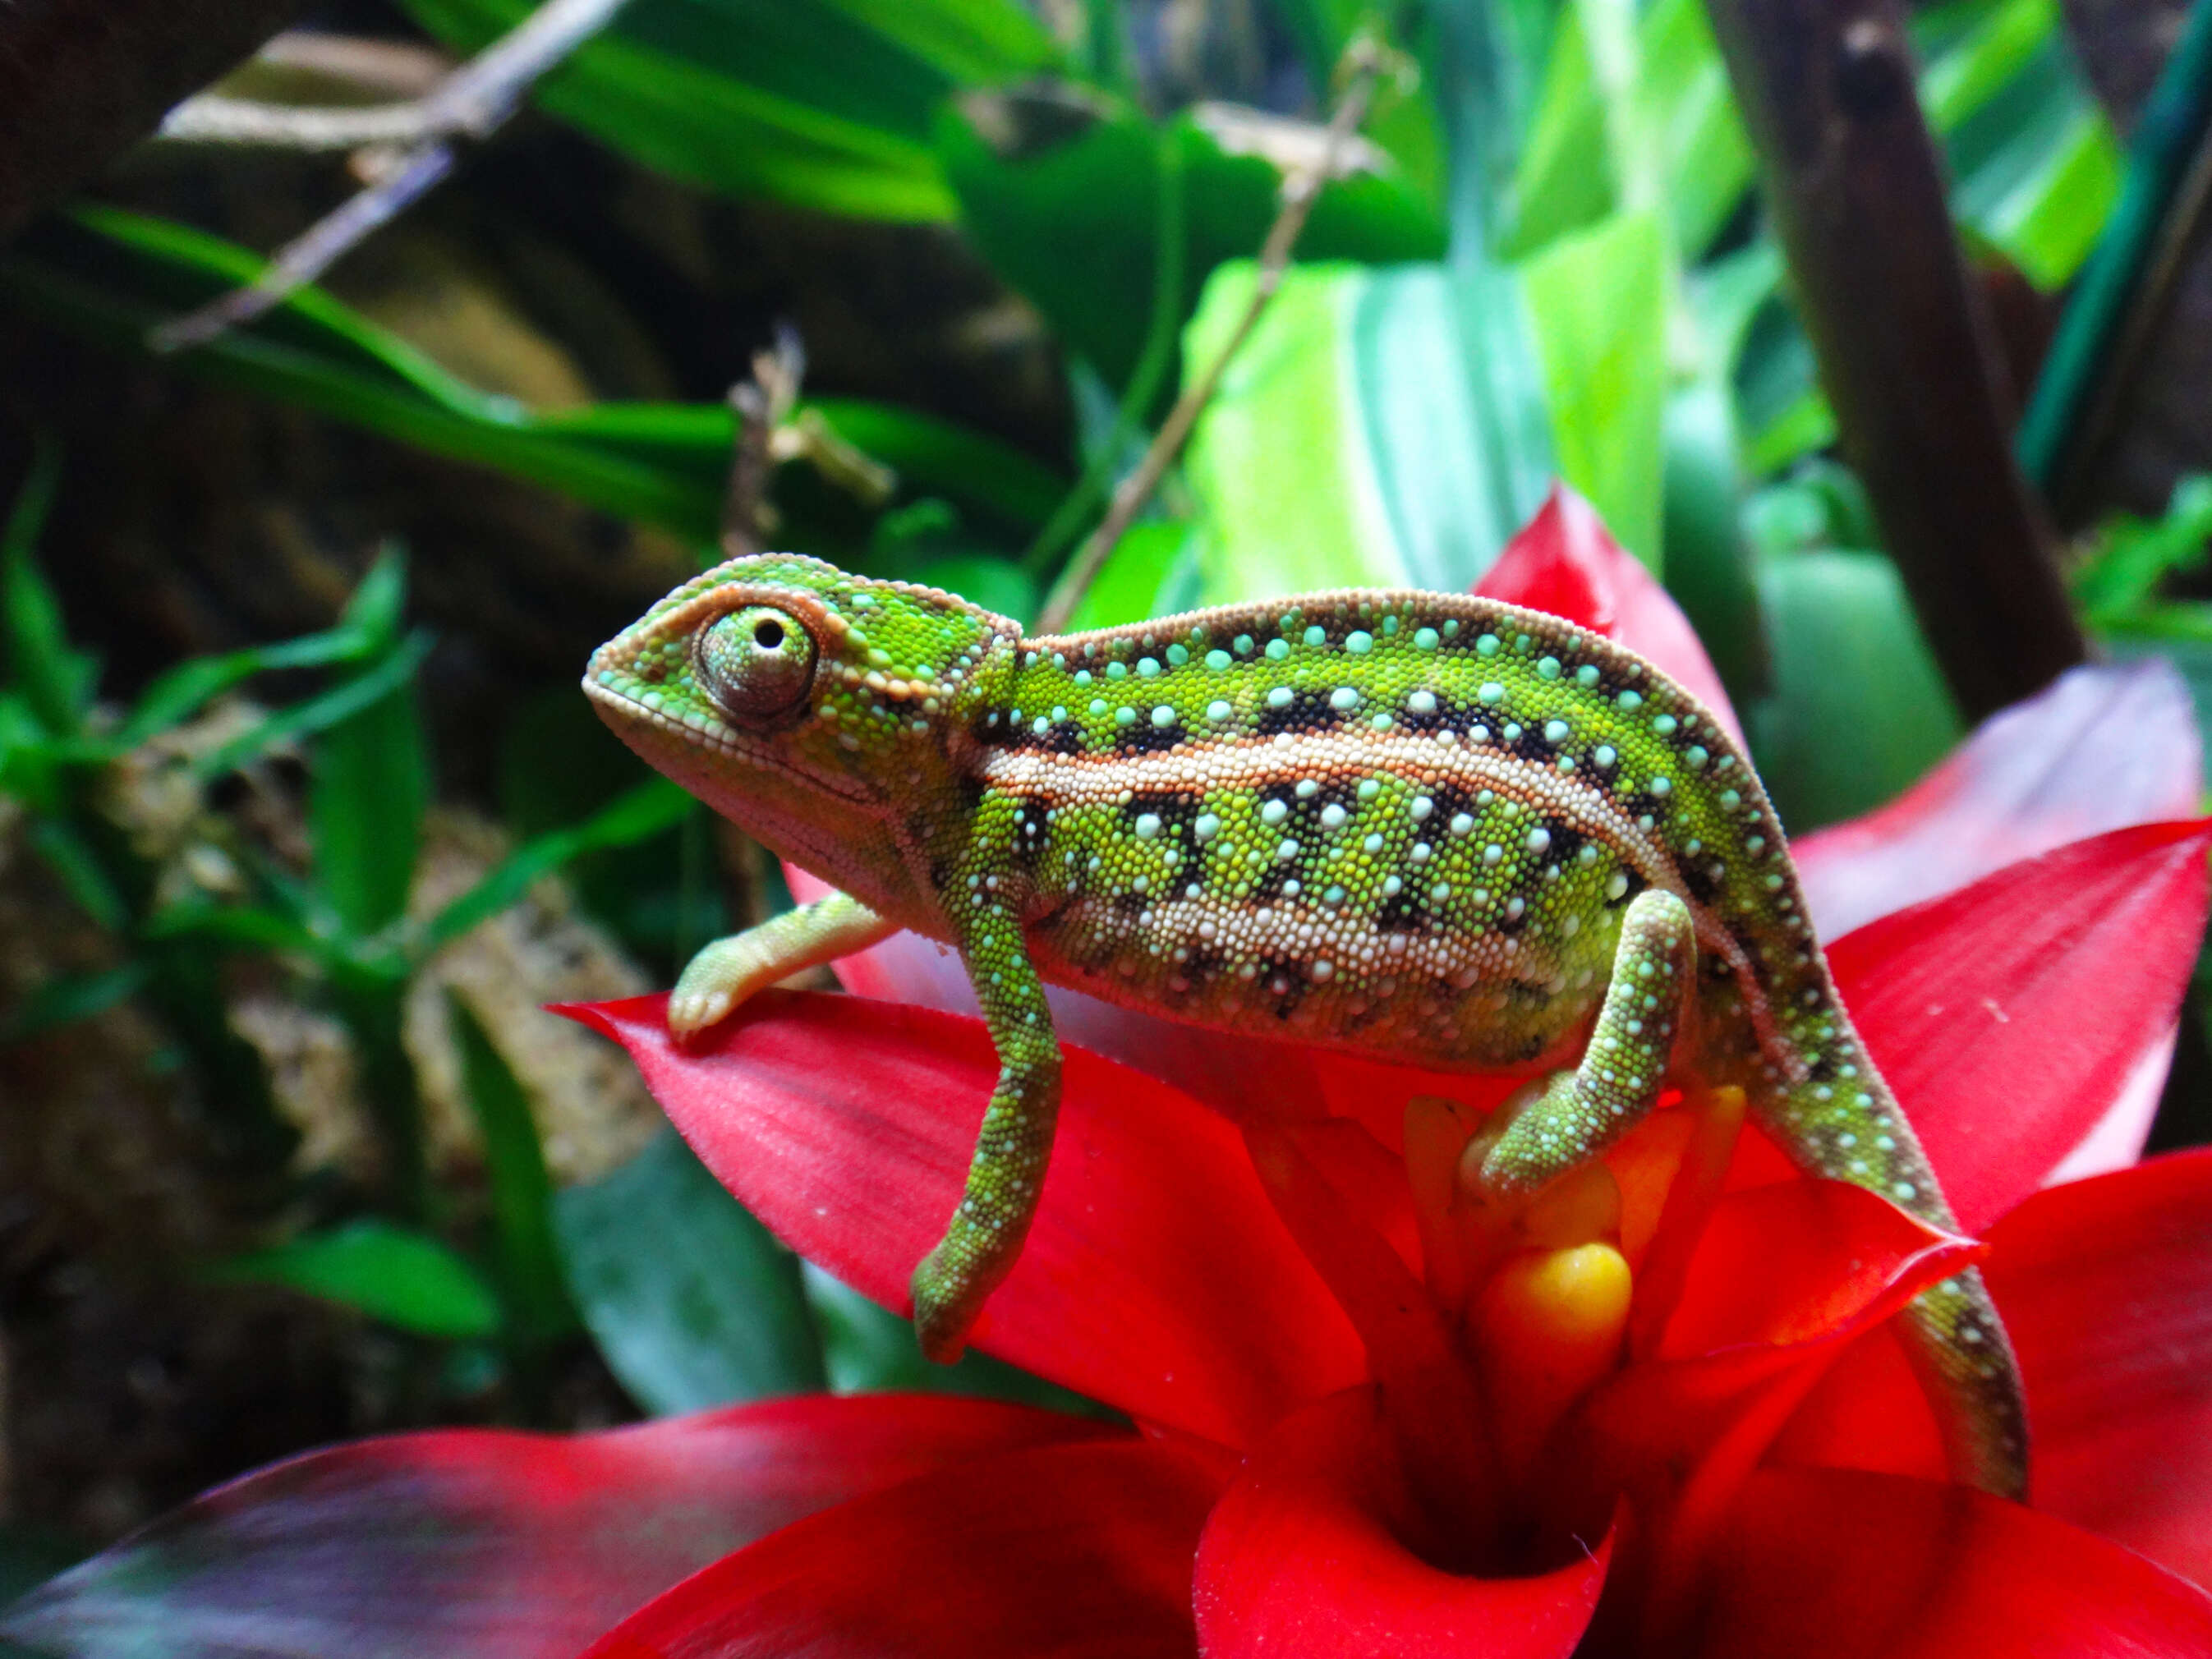 Image of Jeweled chameleon